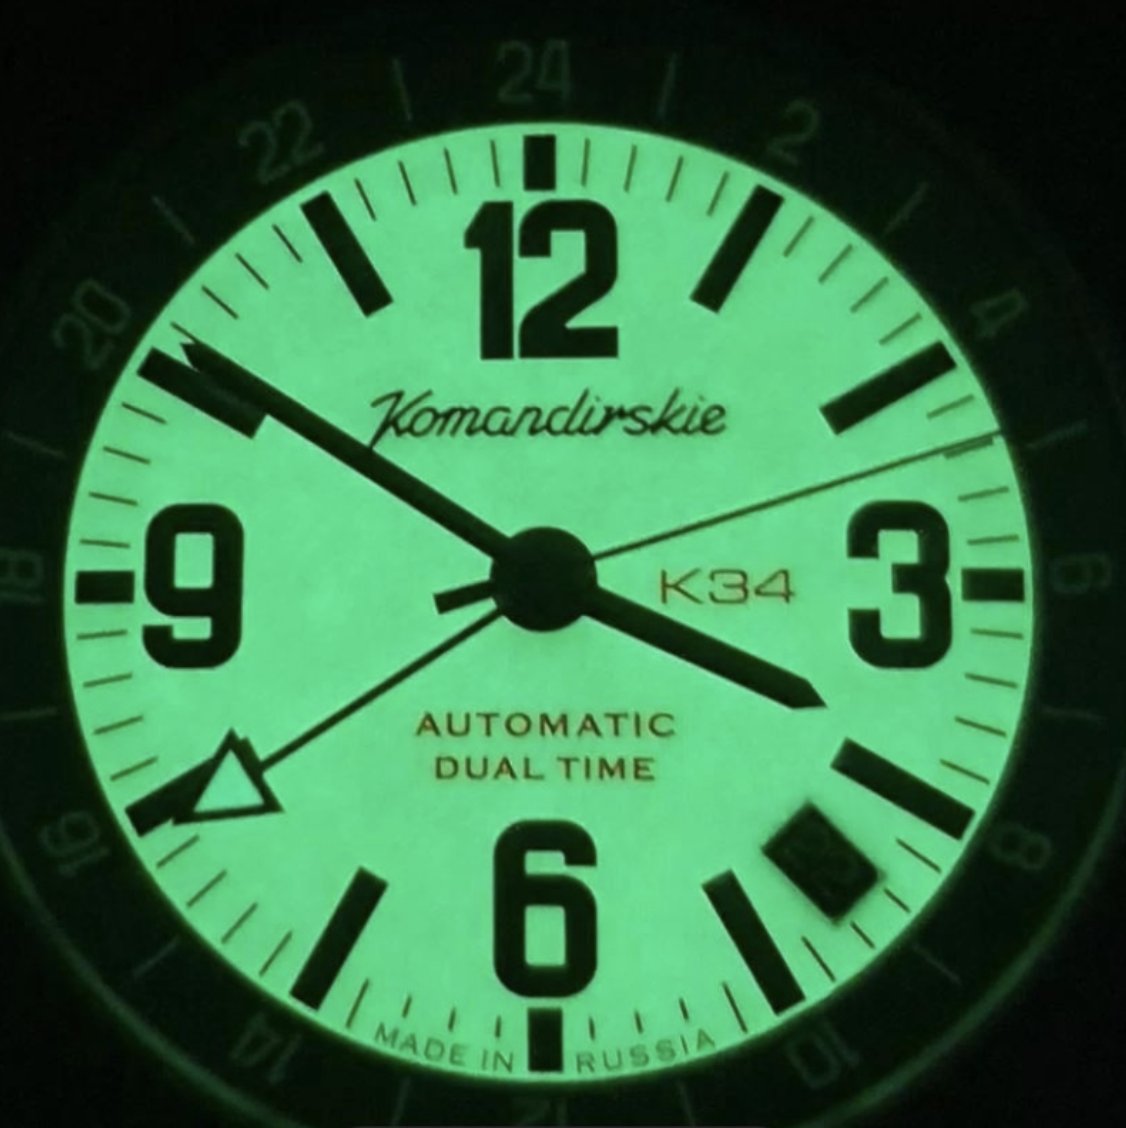 Bilinen markaların aksine farklı saatler takanları görünce çok mutlu oluyorum 😍

@kafatv_ son videosunda @canyilmaz1 bir rus saati takıyor. Rus saatleri de saat dünyasında gördüğüm kadarıyla bir yere sahip. Can Yılmaz ise Vostok Komandirskie markasının K-34 modelini tercih…